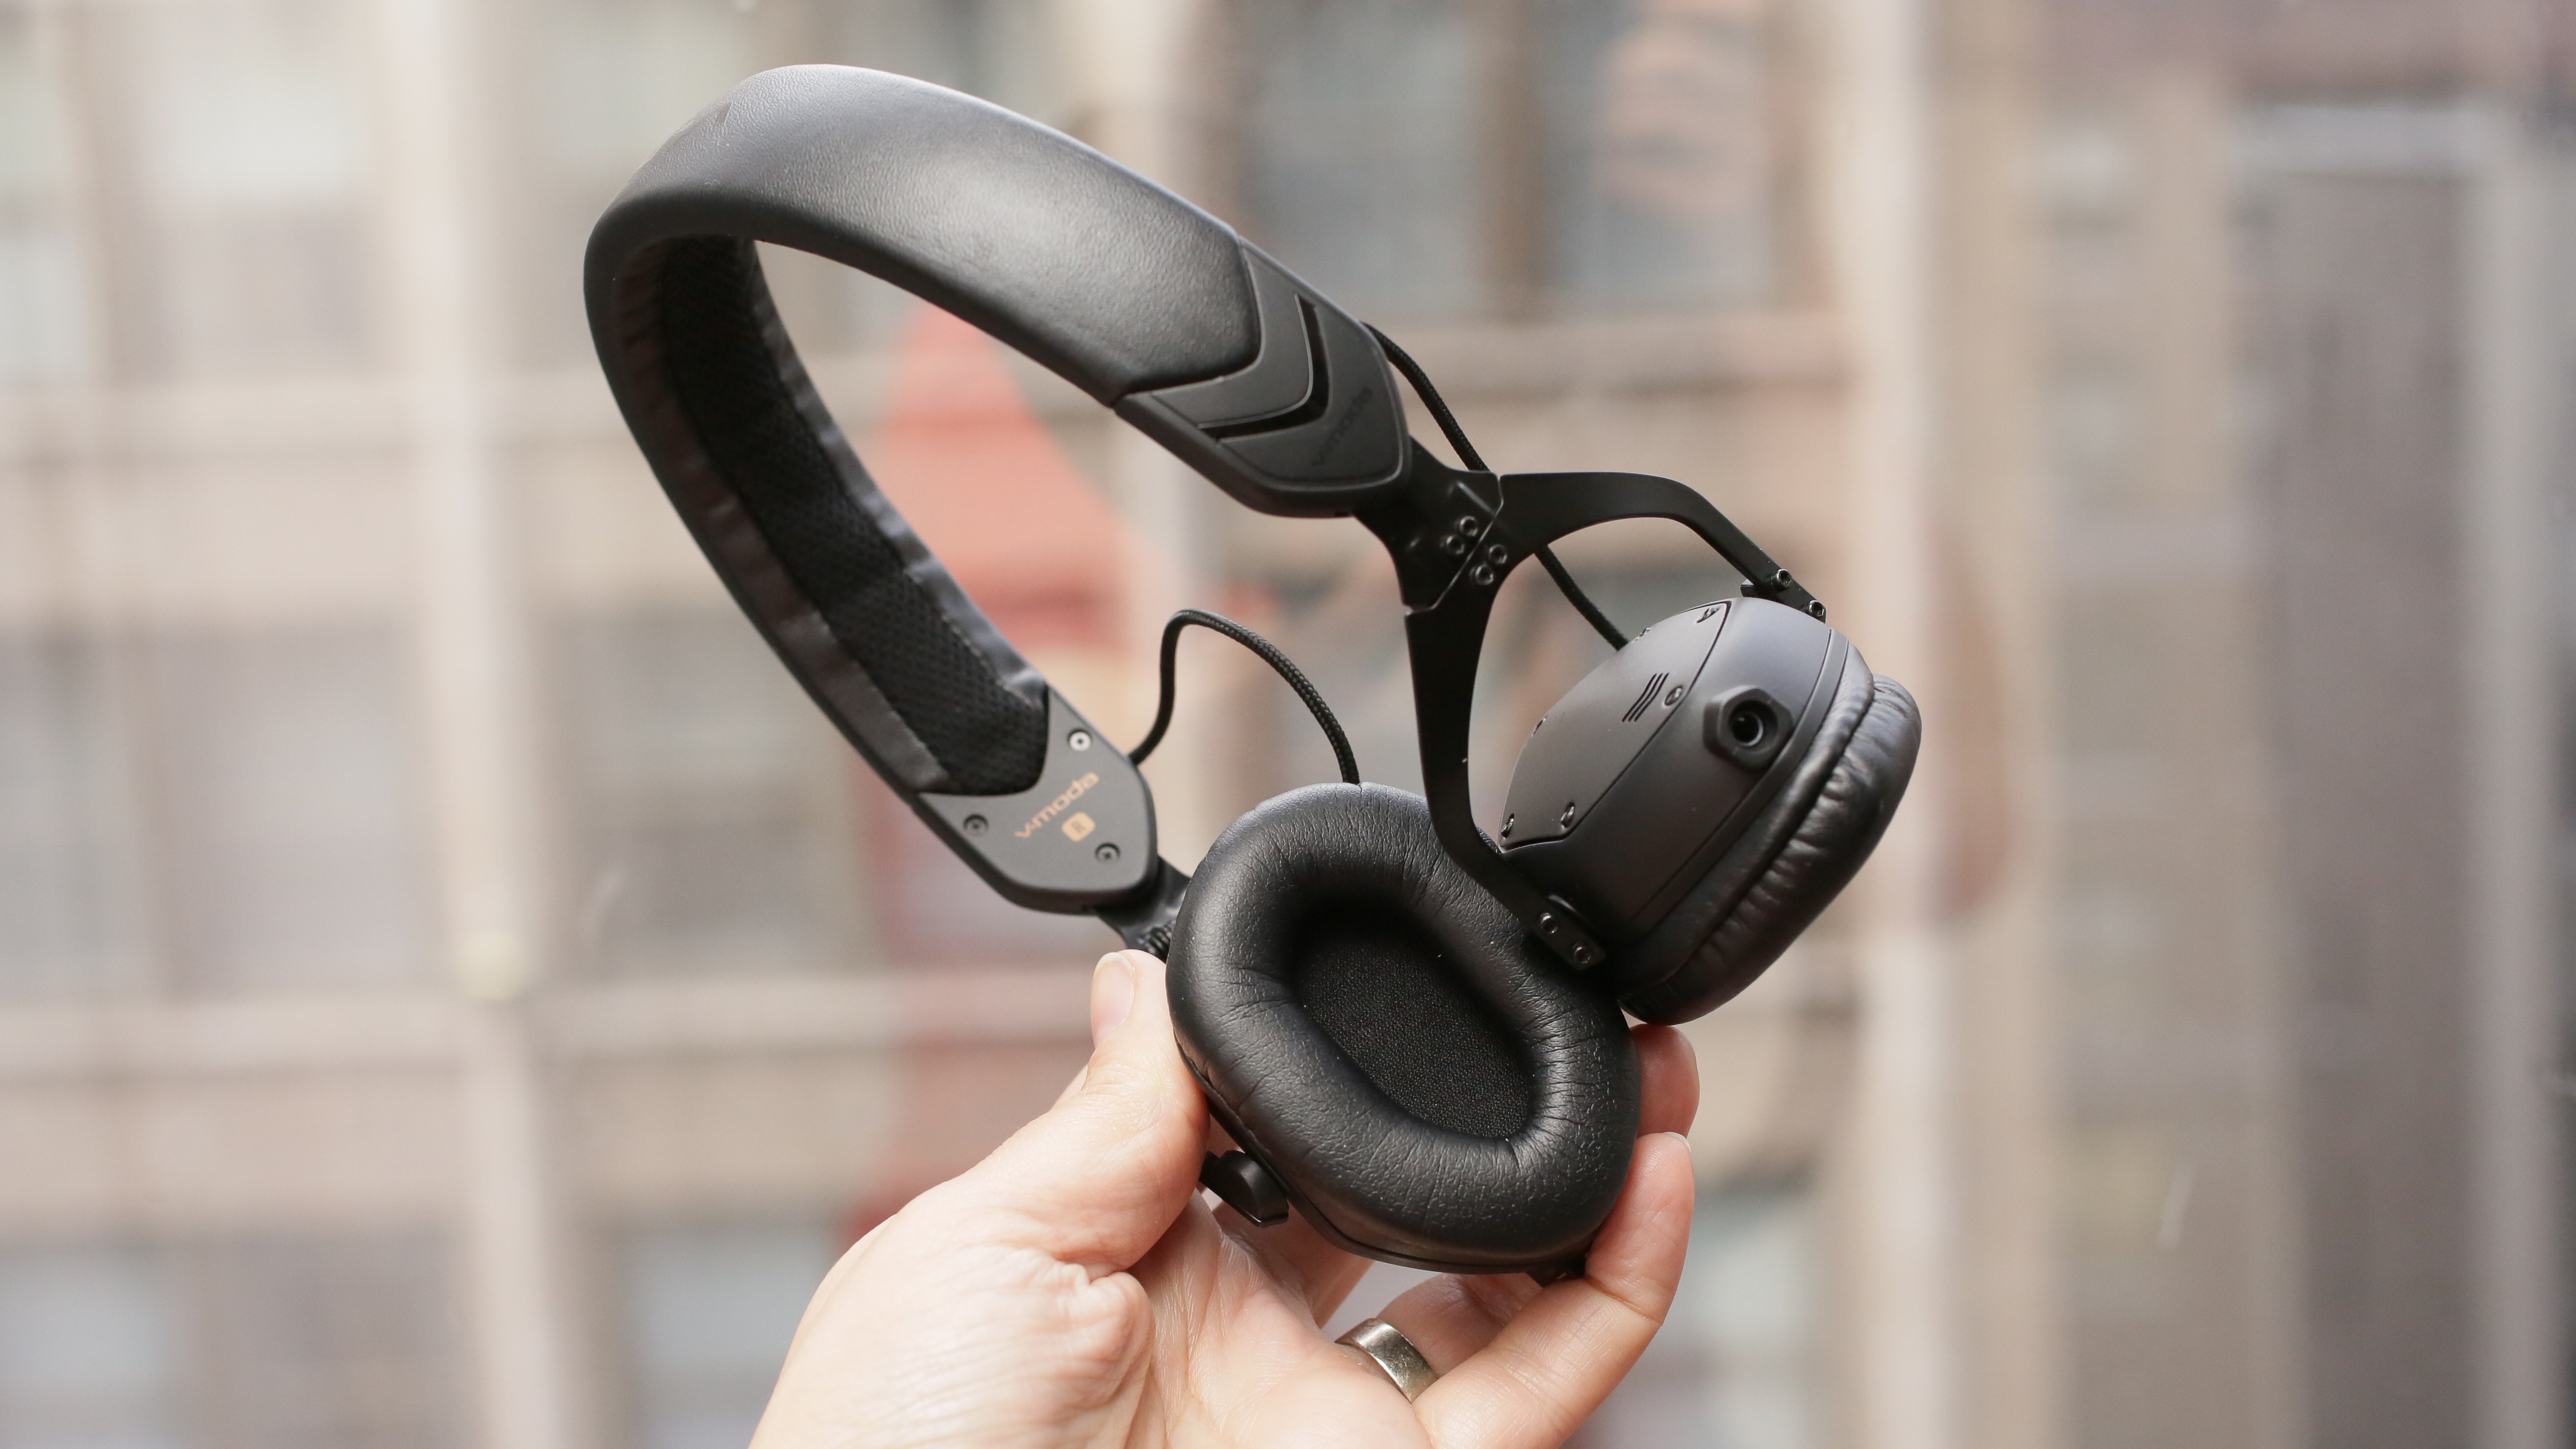 V-Moda XS on-ear headphones review: V-Moda's upgraded headphones make the grade - CNET